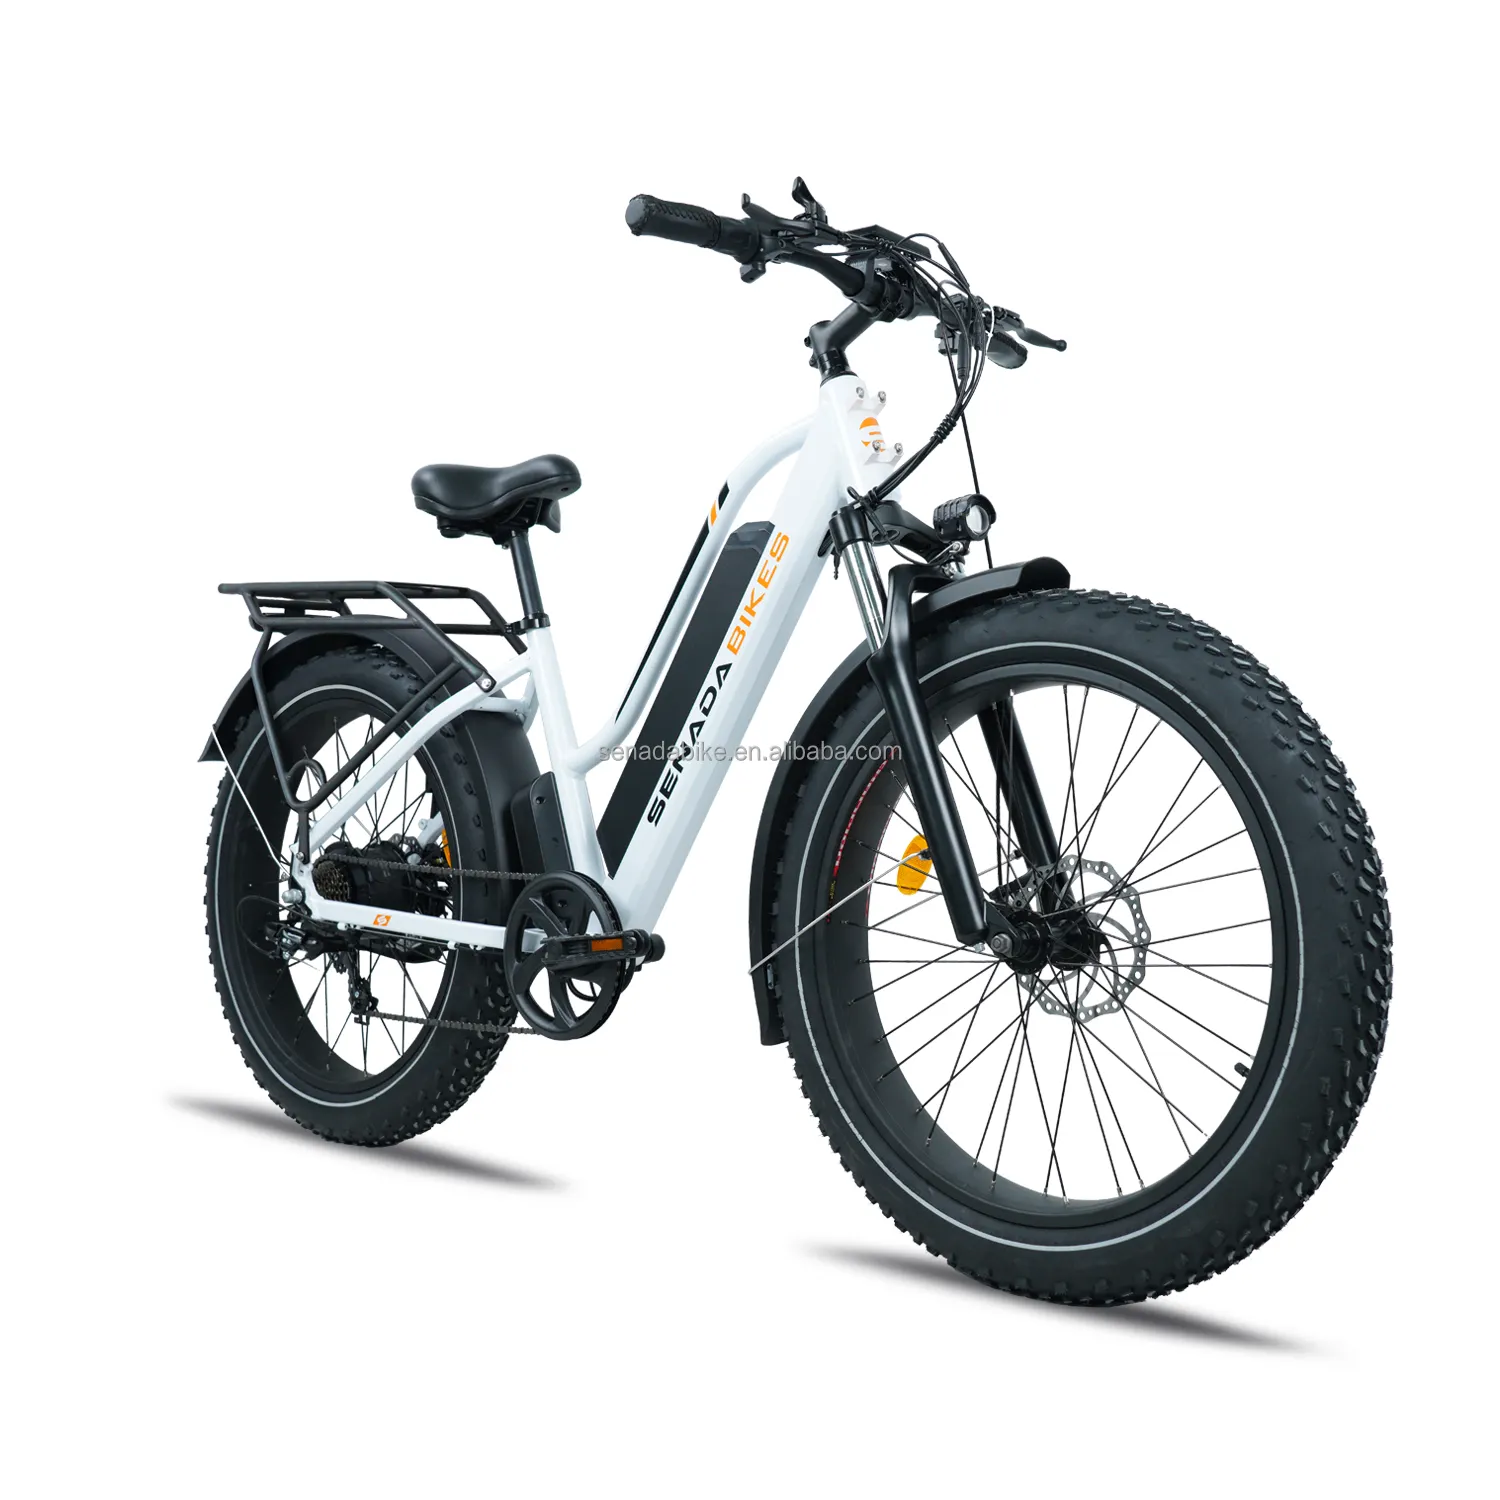 드롭 선박 20*4.0 "팻 타이어 1000W 모터 전기 자전거 큰 힘 모든 지형 먼지 Ebike 전기 자전거 EU 창고에서 뚱뚱한 자전거